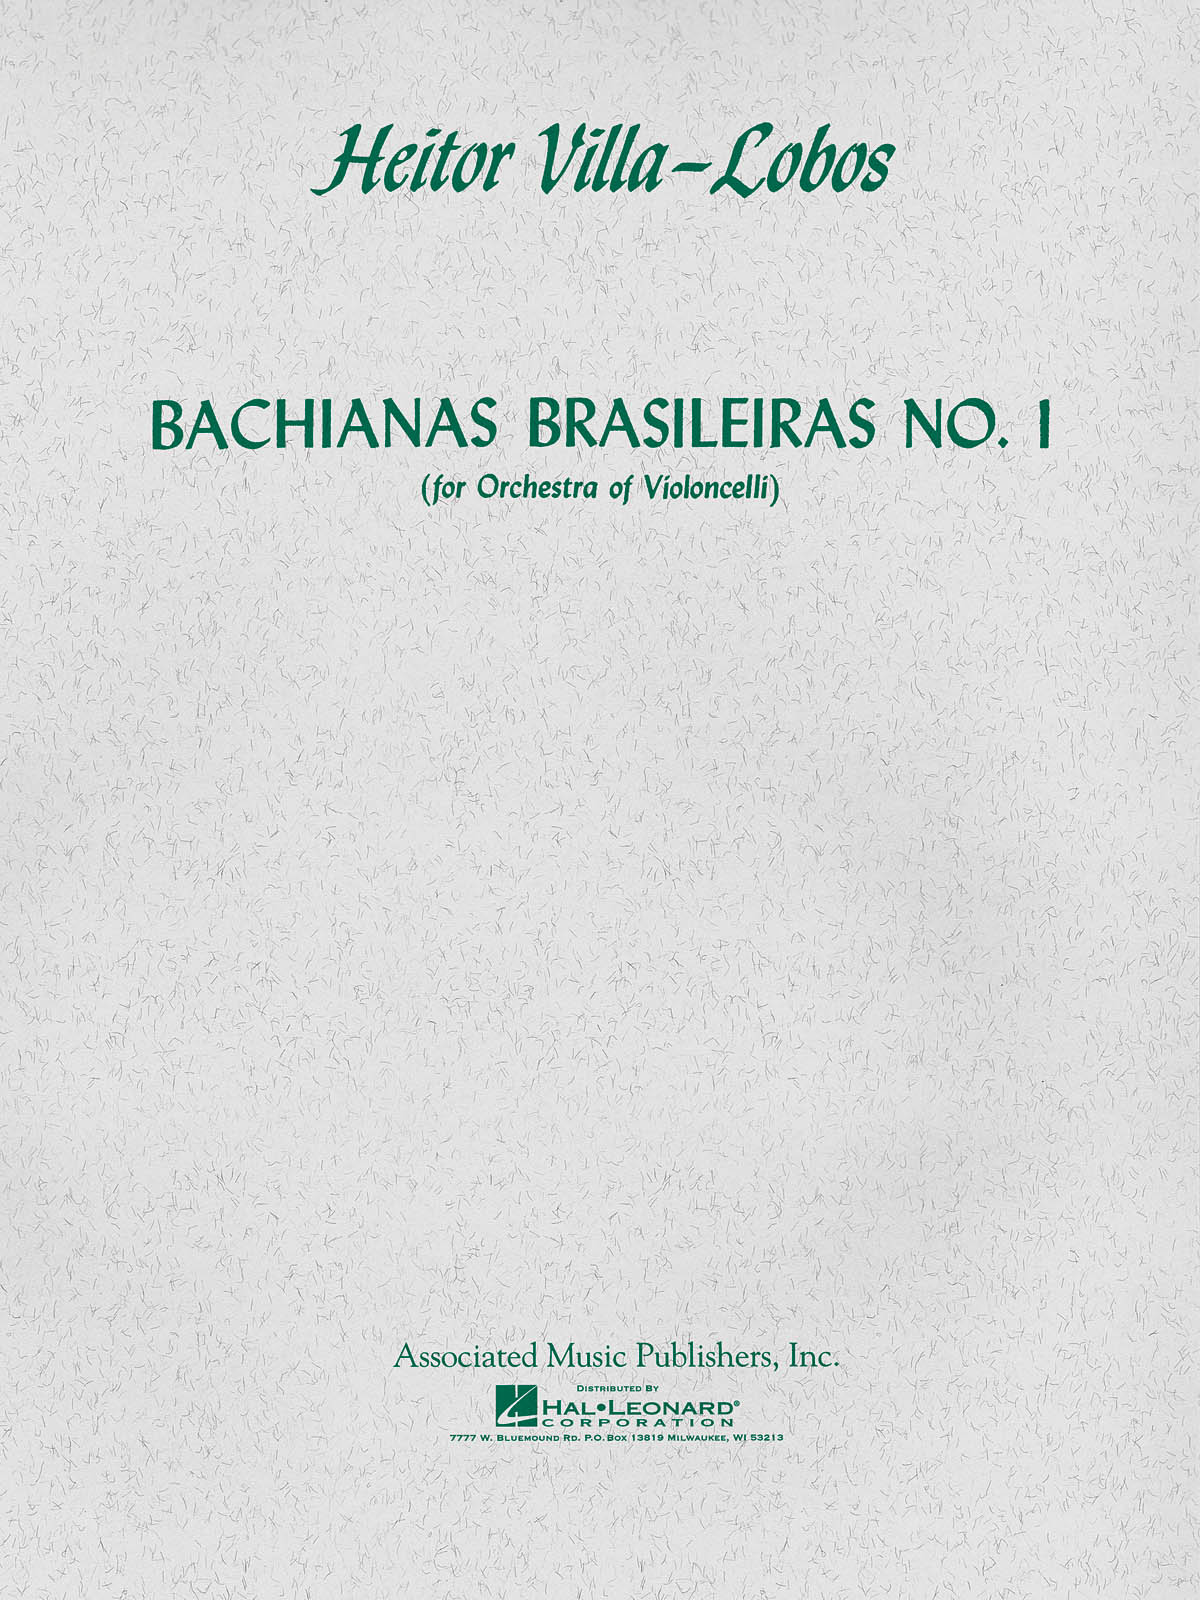 Villa-Lobos Bachianas Brasileiras No1 For Orchestra Of Violoncelli